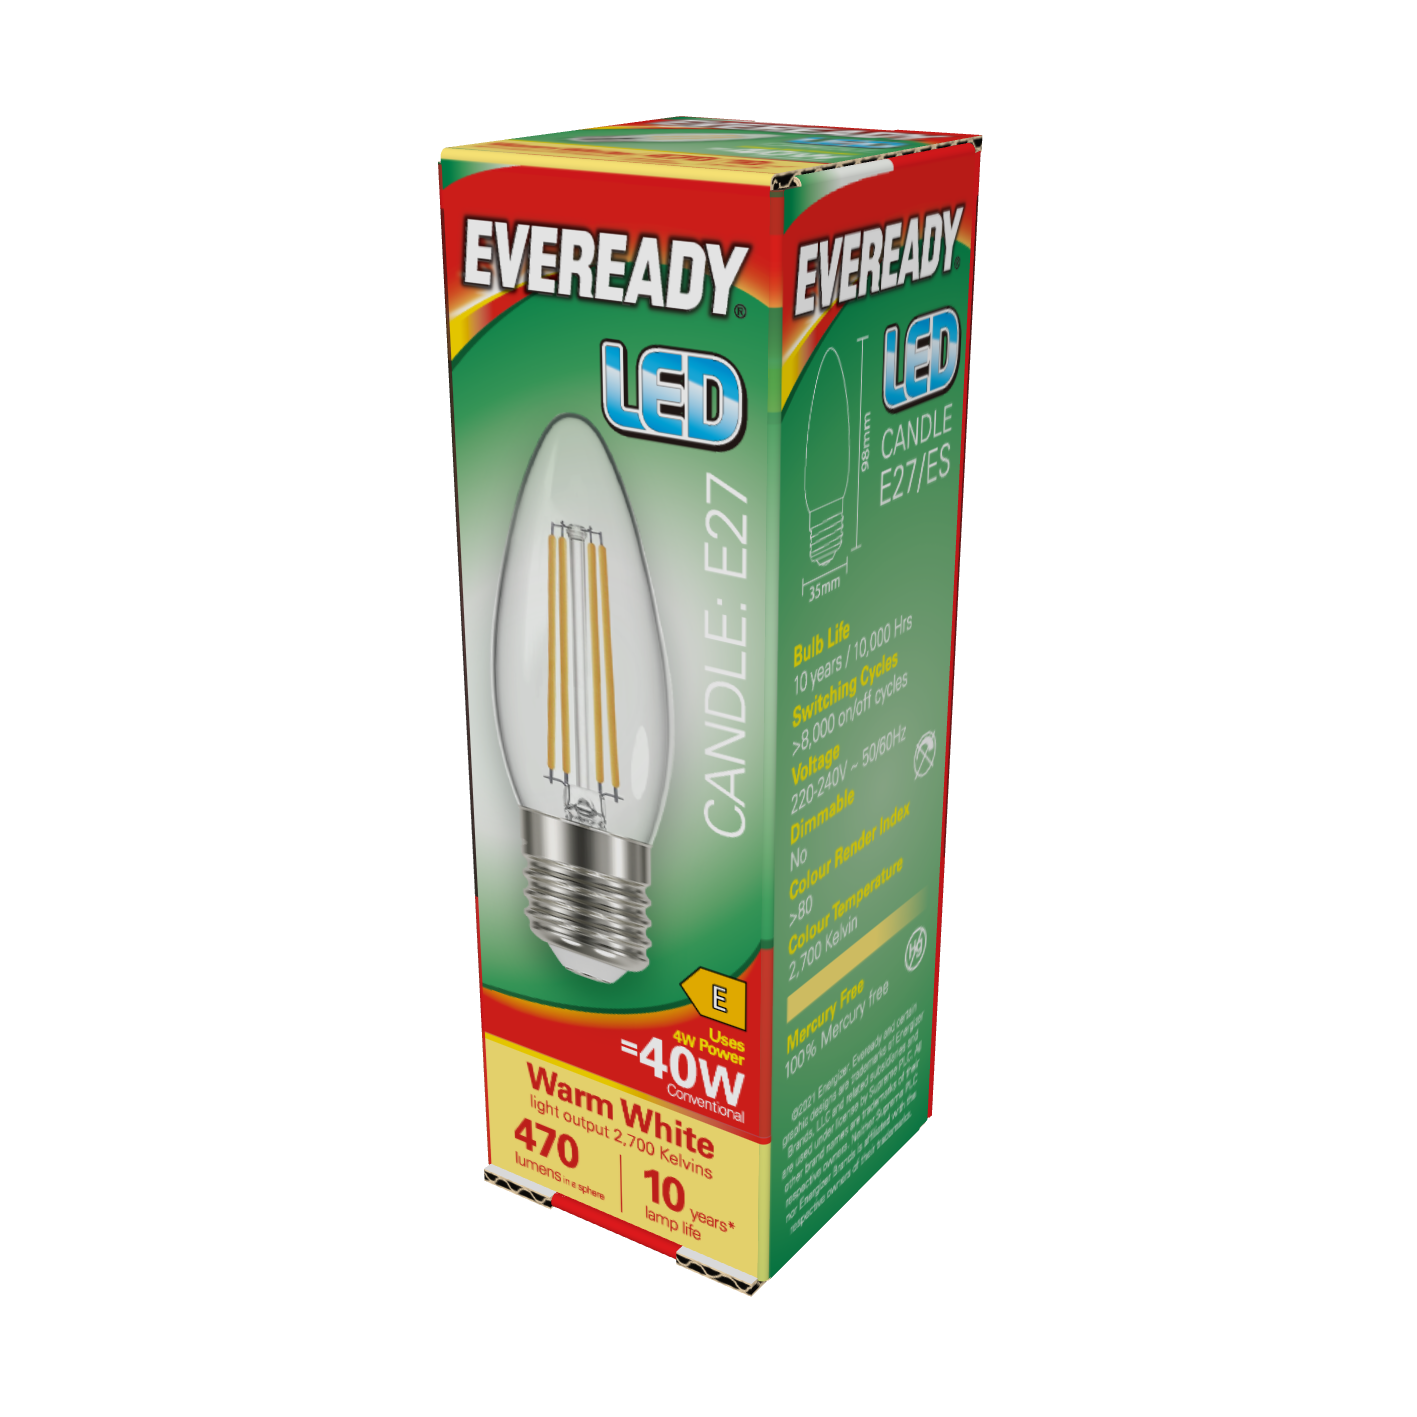 Vela de Filamento LED Eveready E27 (ES) 470lm 4W 2.700K (Blanco Cálido), Caja de 1